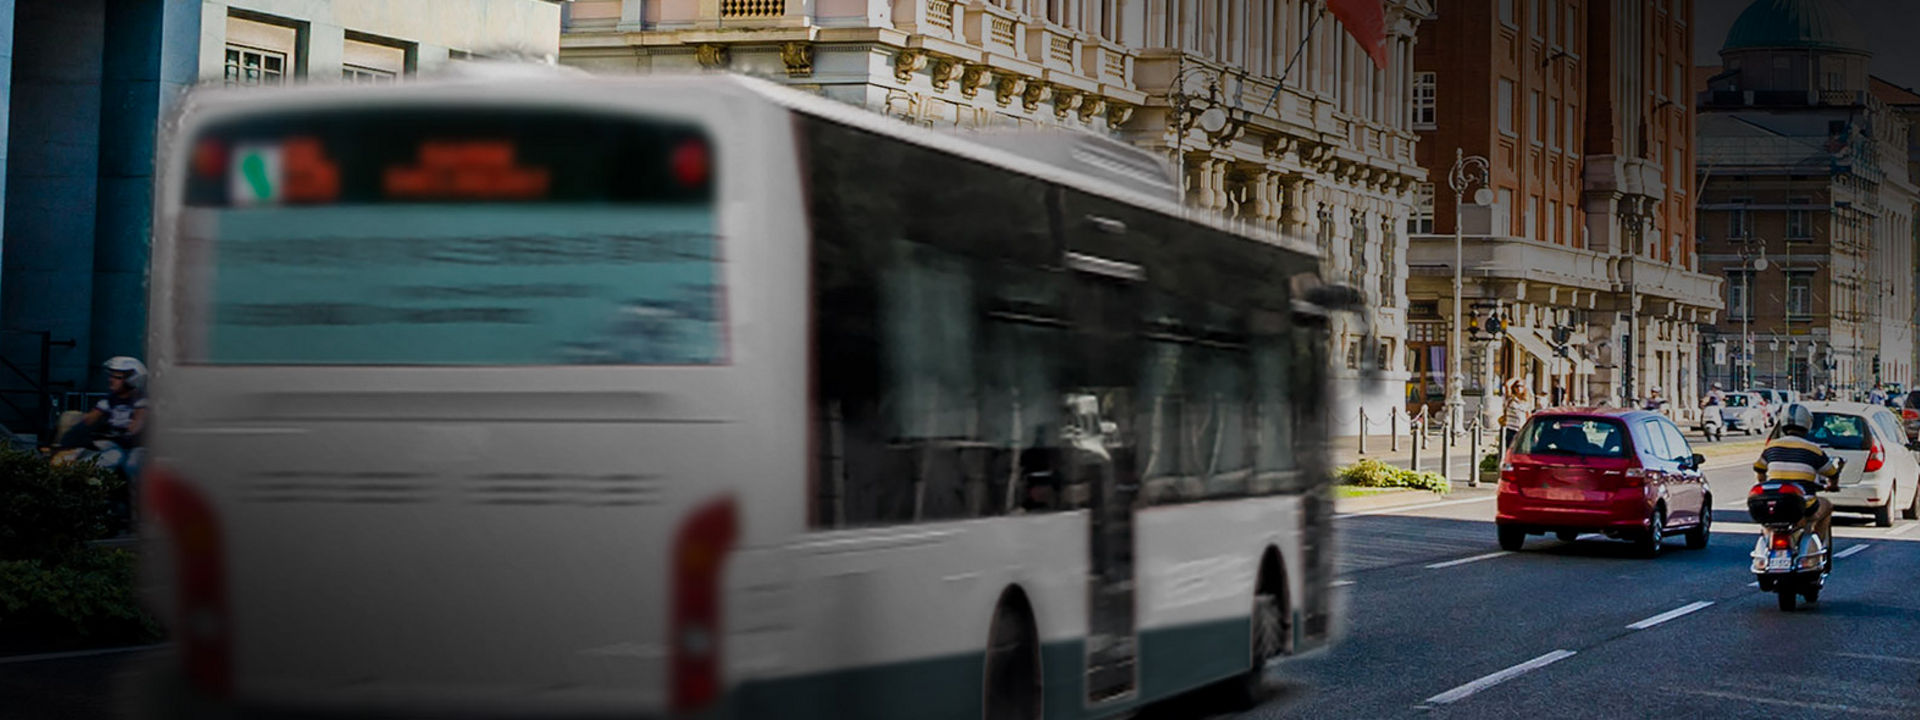 Kuvassa on Bridgestonen kaupunkibussien renkaita käyttävä bussi kaupungin keskustassa.